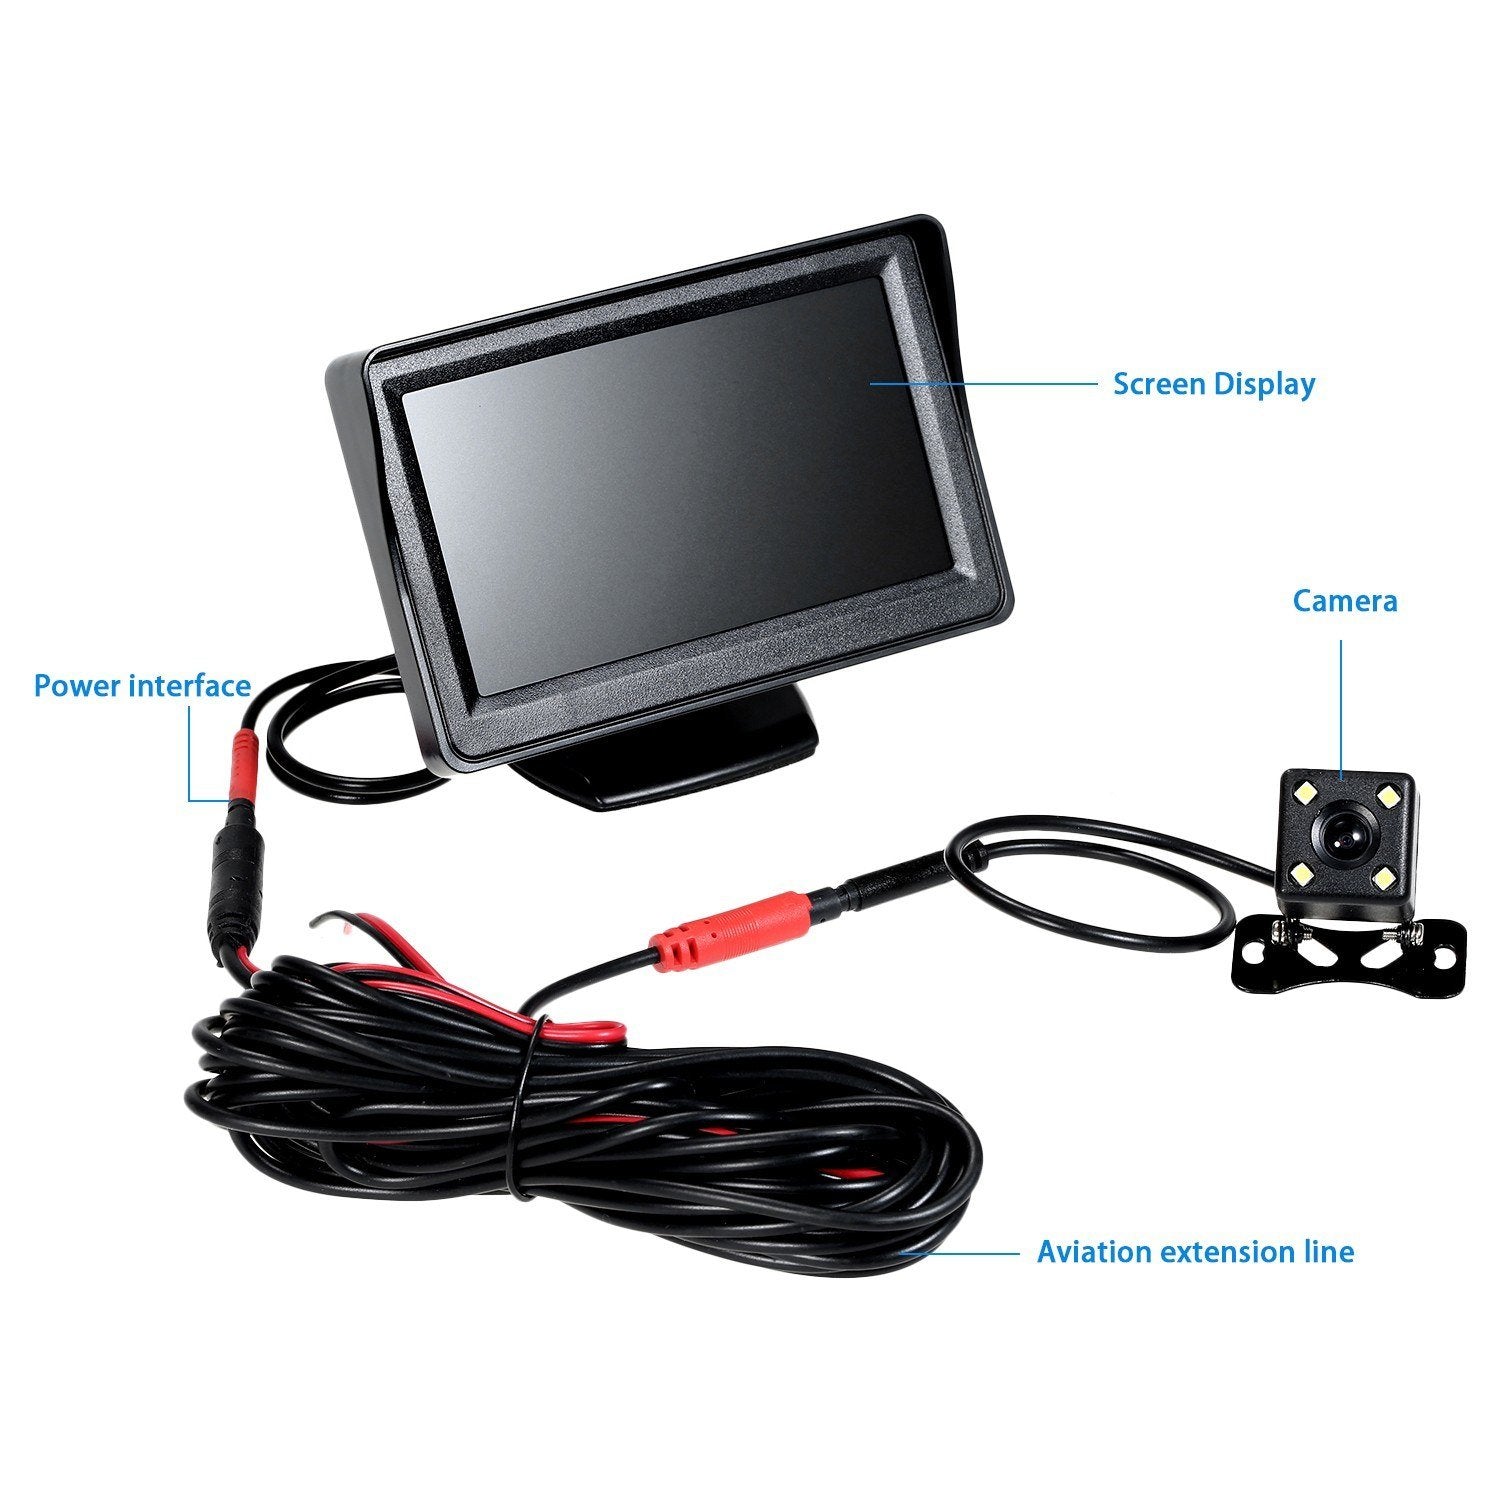 4.3'' TFT LCD Monitor Car Vehicle Backup Camera Parking System Rear View Night Vision